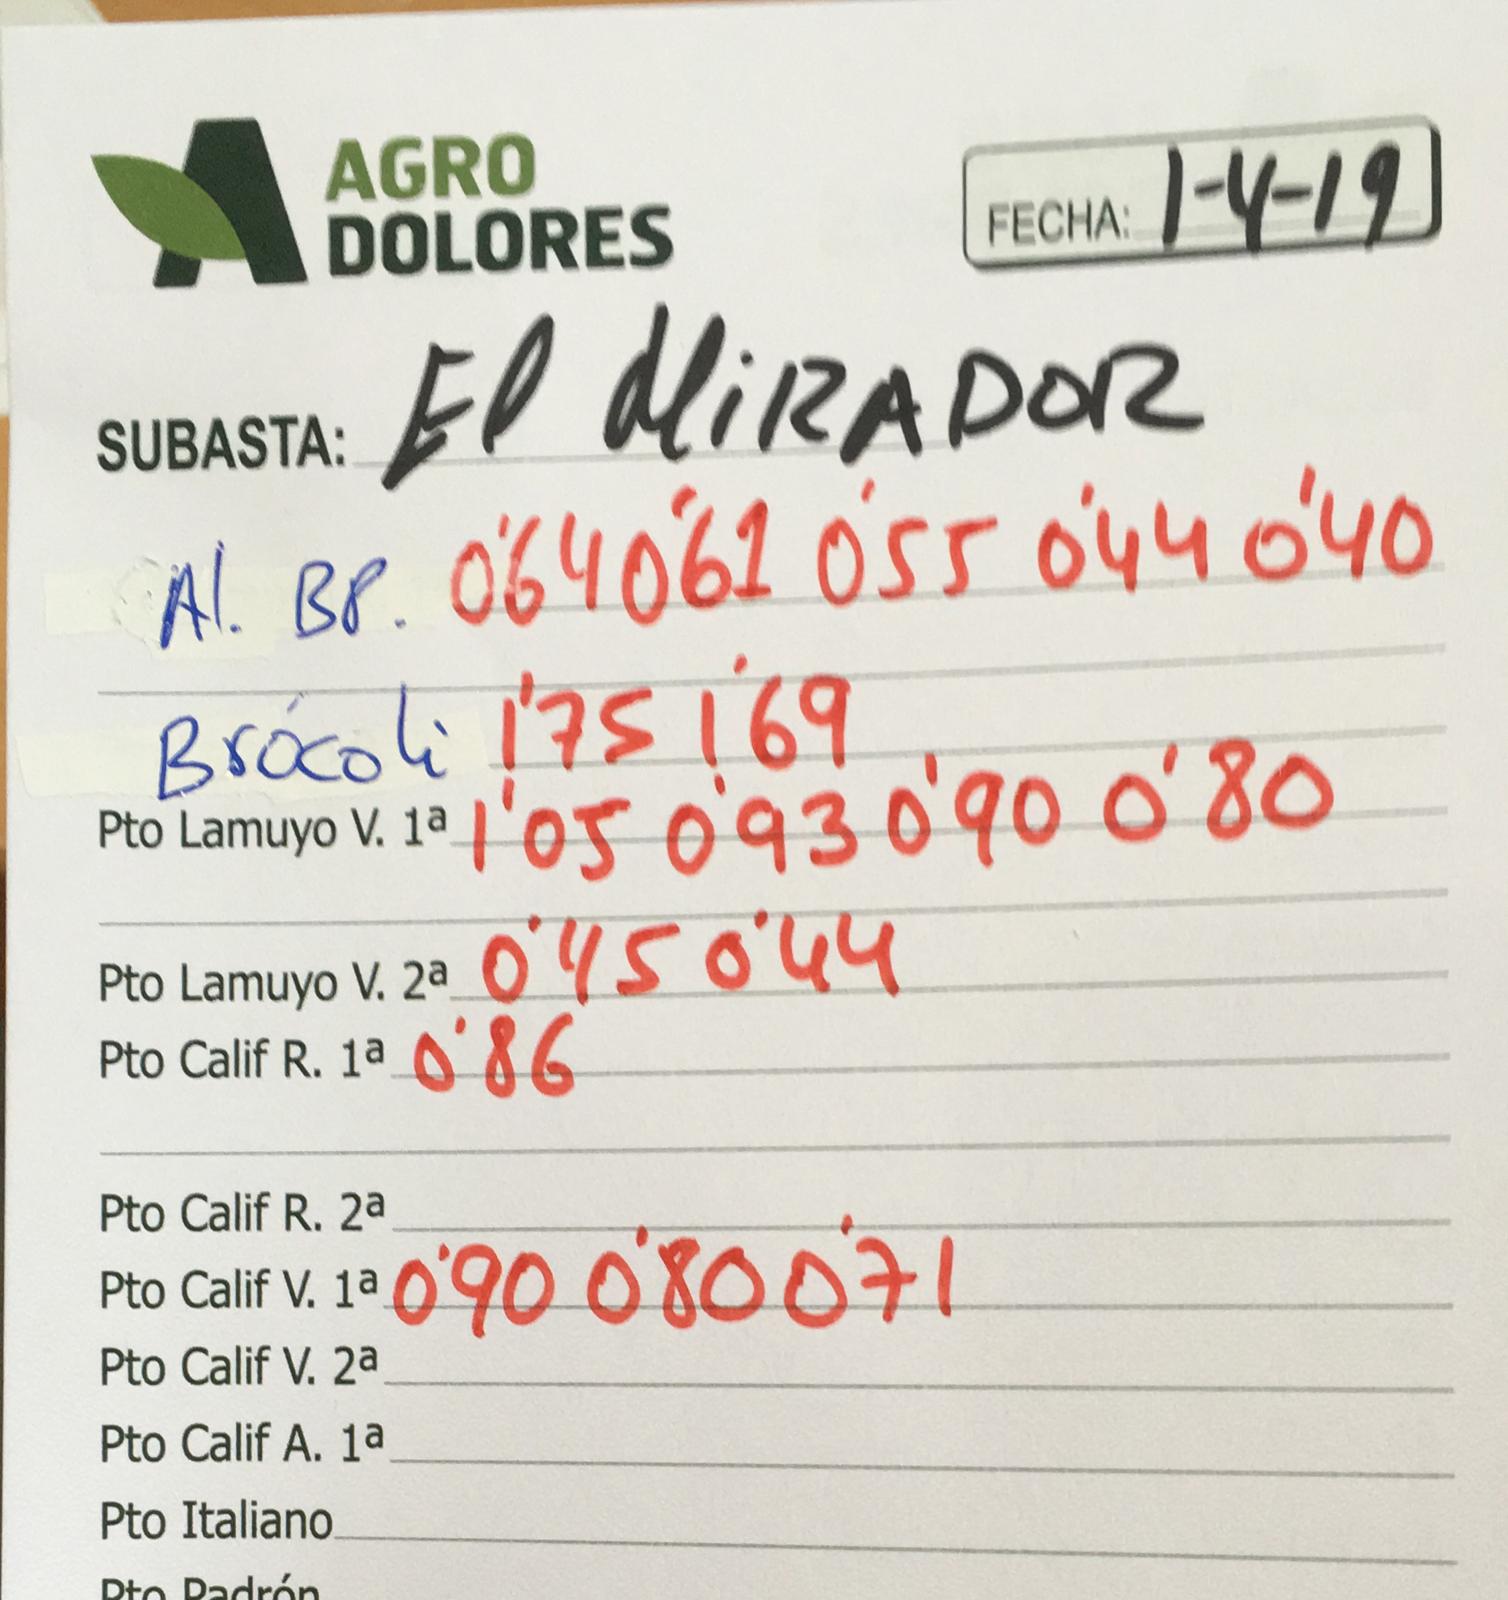 Subasta hortofrutícola Agrodolores El Mirador 1 de Abril 2019